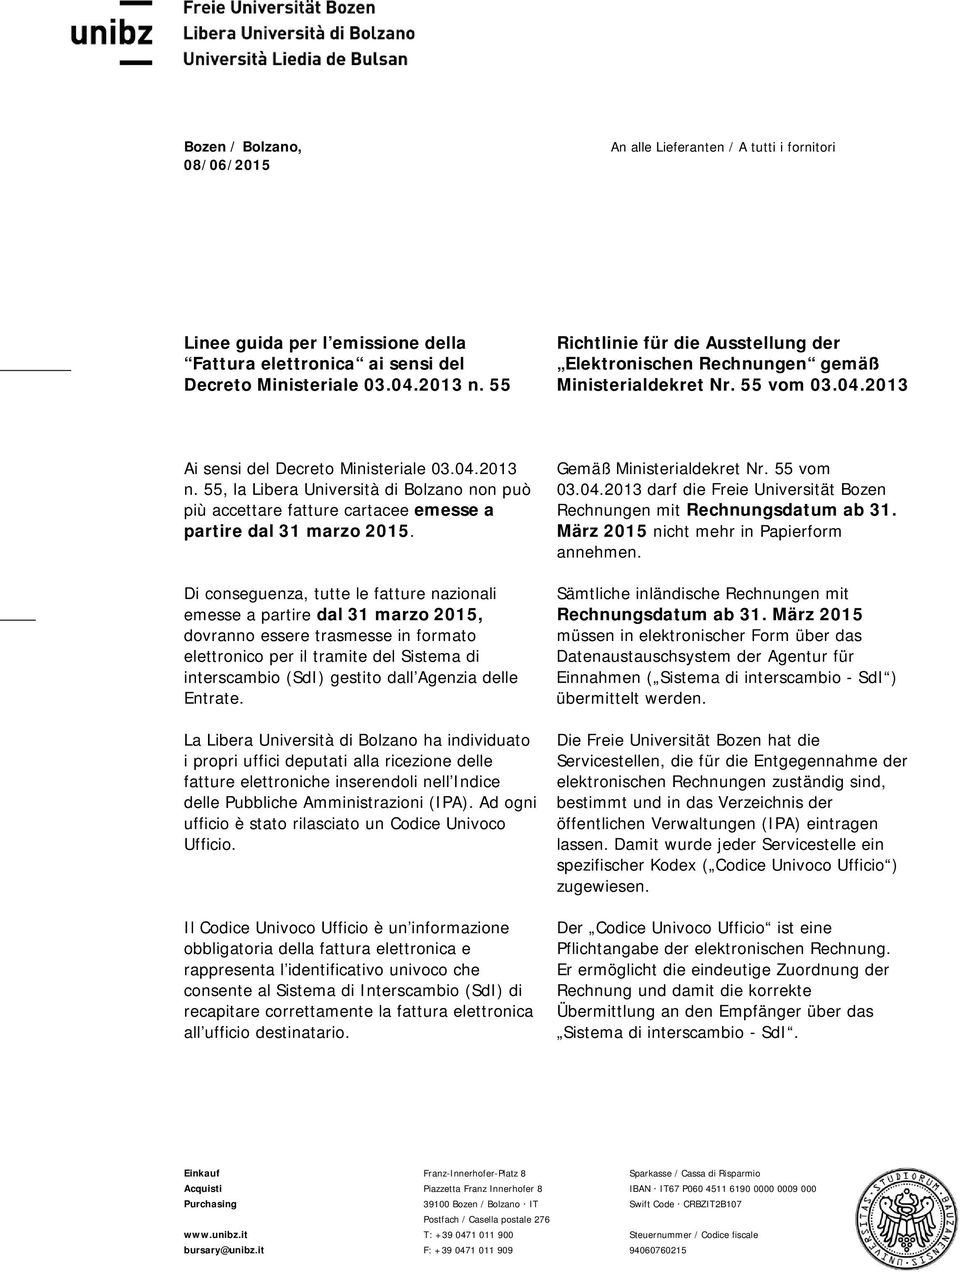 55, la Libera Università di Bolzano non può più accettare fatture cartacee emesse a partire dal 31 marzo 2015.